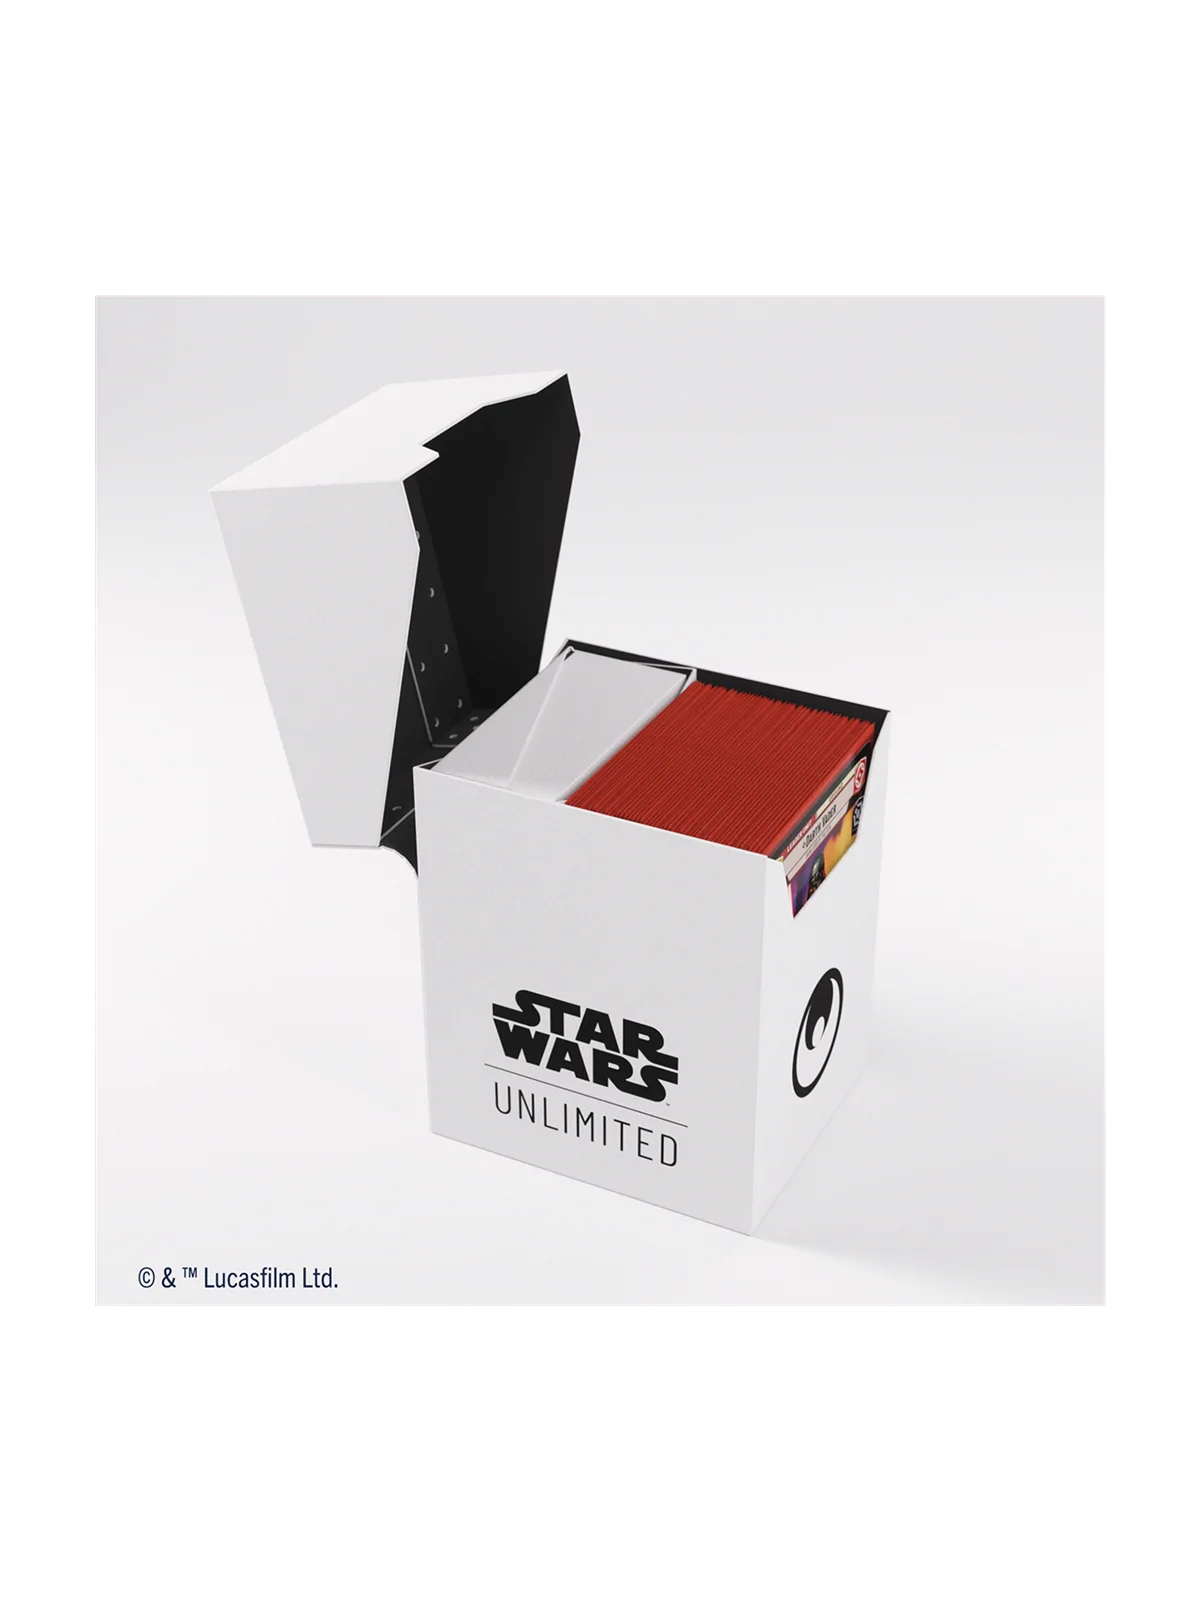 Comprar Star Wars: Unlimited Soft Crate White/Black barato al mejor pr